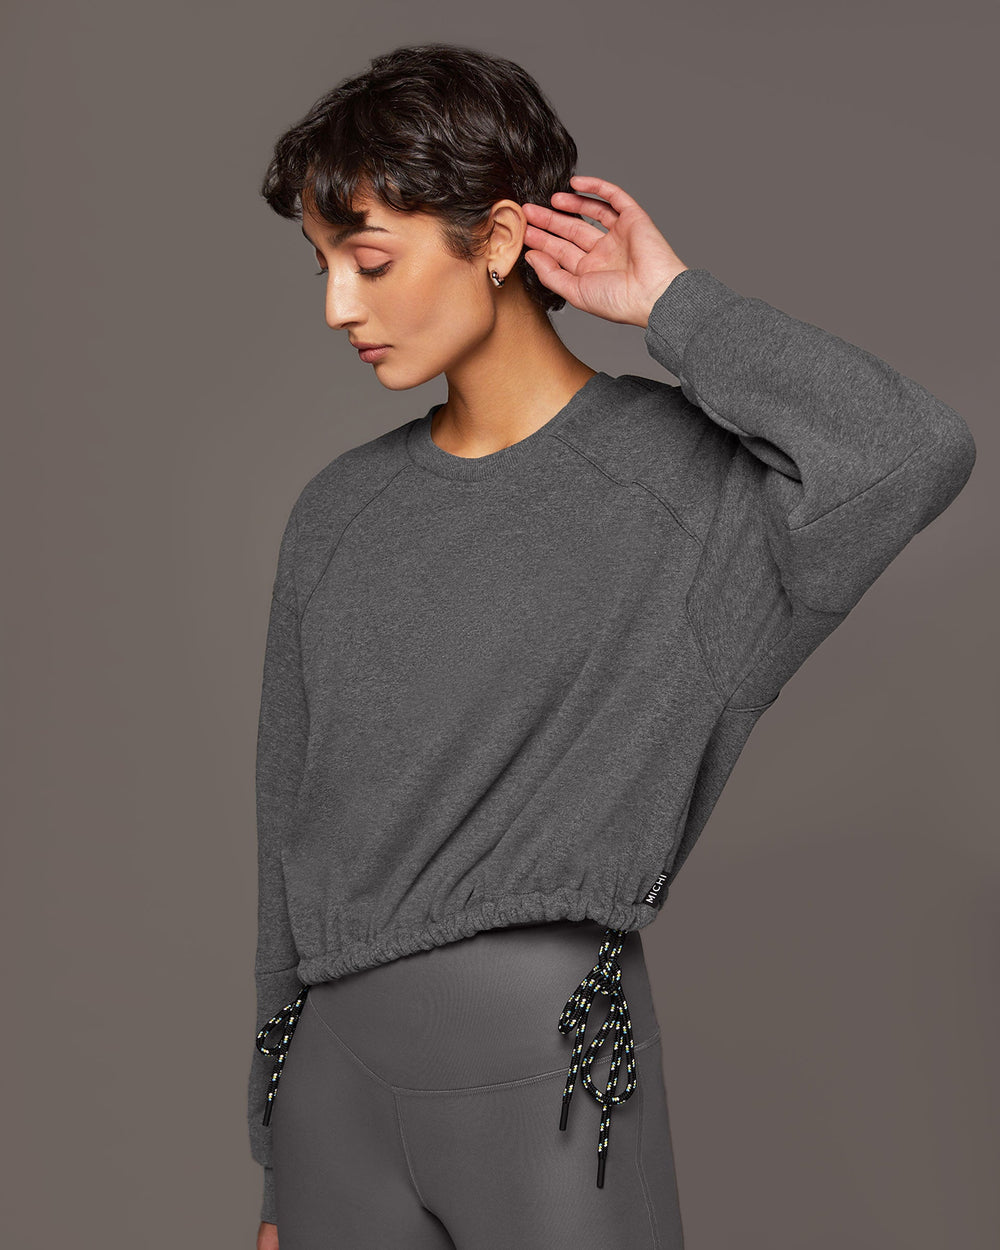 Solace Sweatshirt - Charcoal Grey